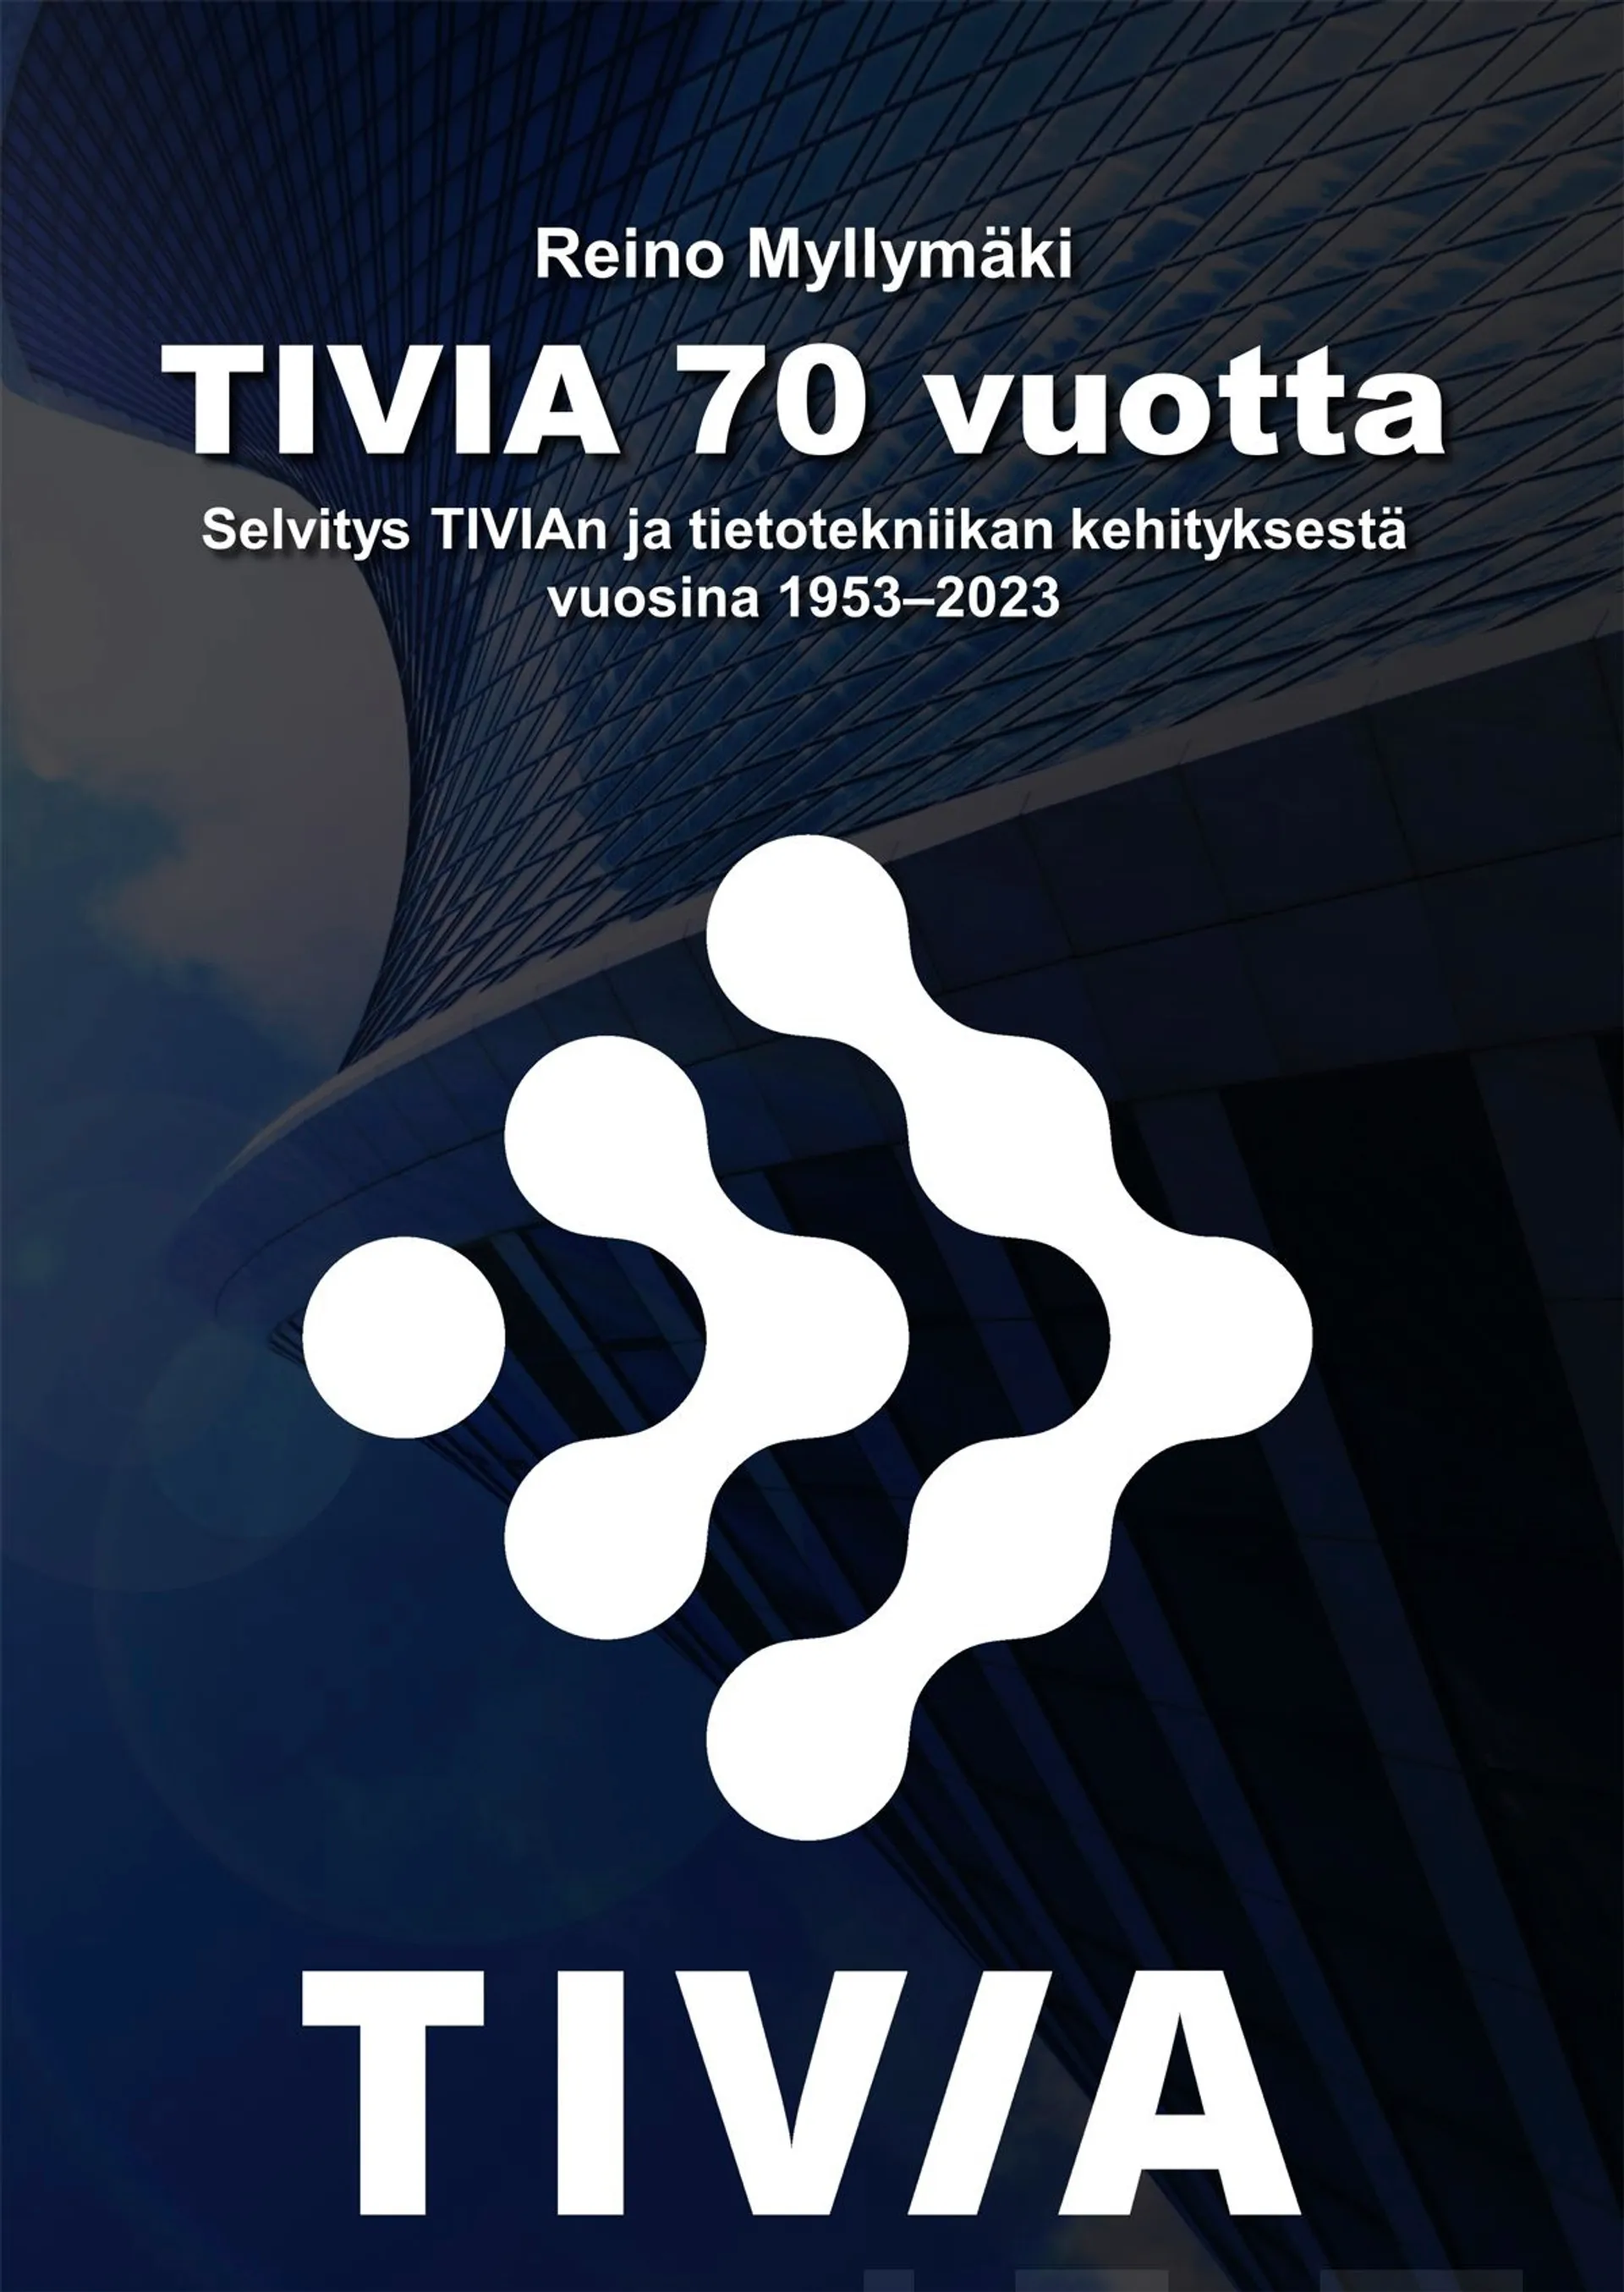 Myllymäki, TIVIA 70 vuotta - Selvitys TIVIAn ja tietotekniikan kehityksestä vuosina 1953-2023